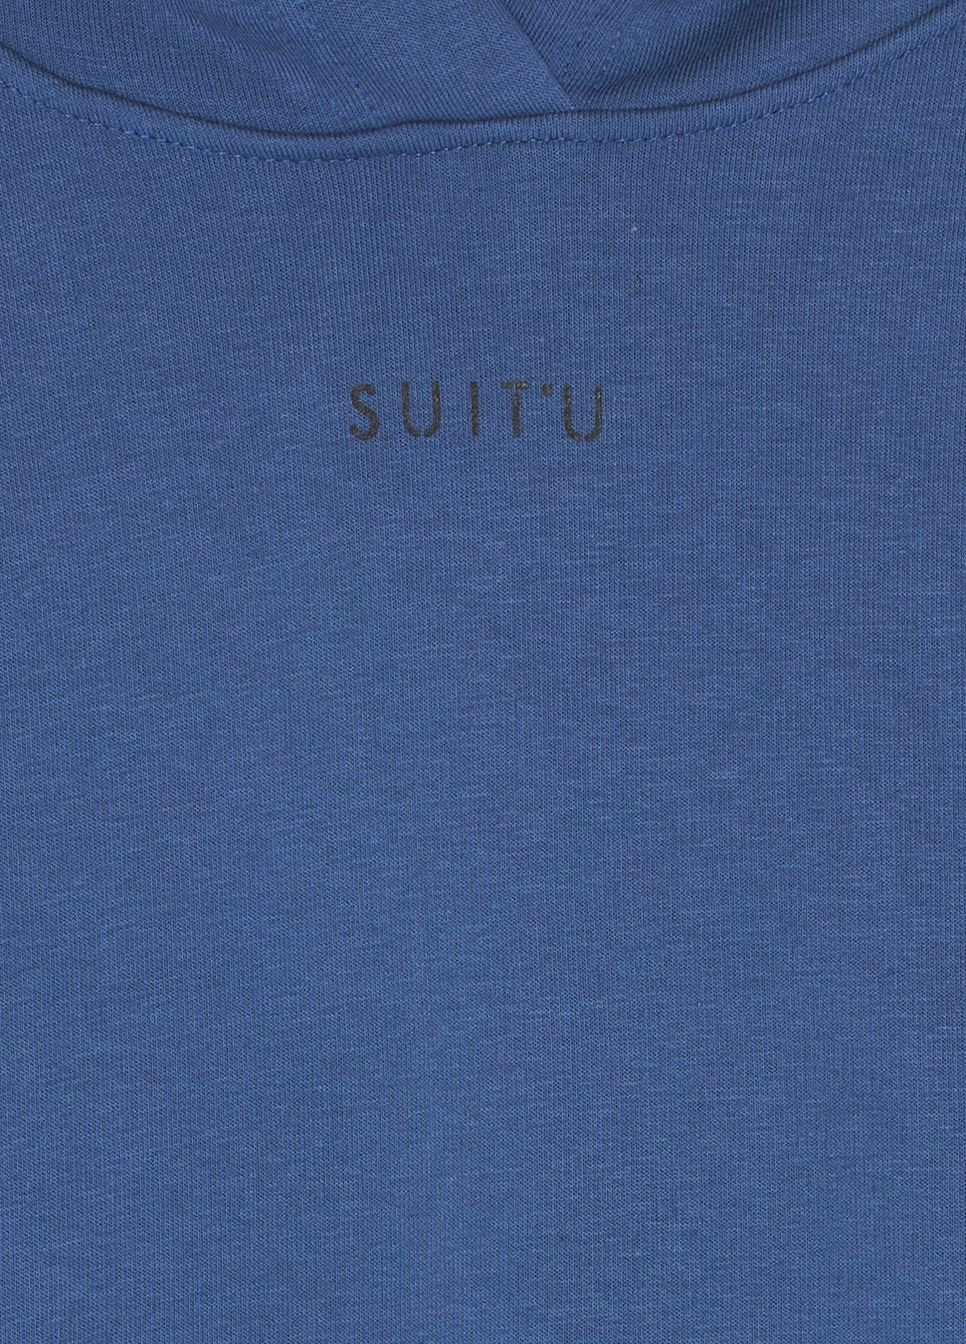 Худі фліс,індіго,Suit`u Suit'u (265011181)